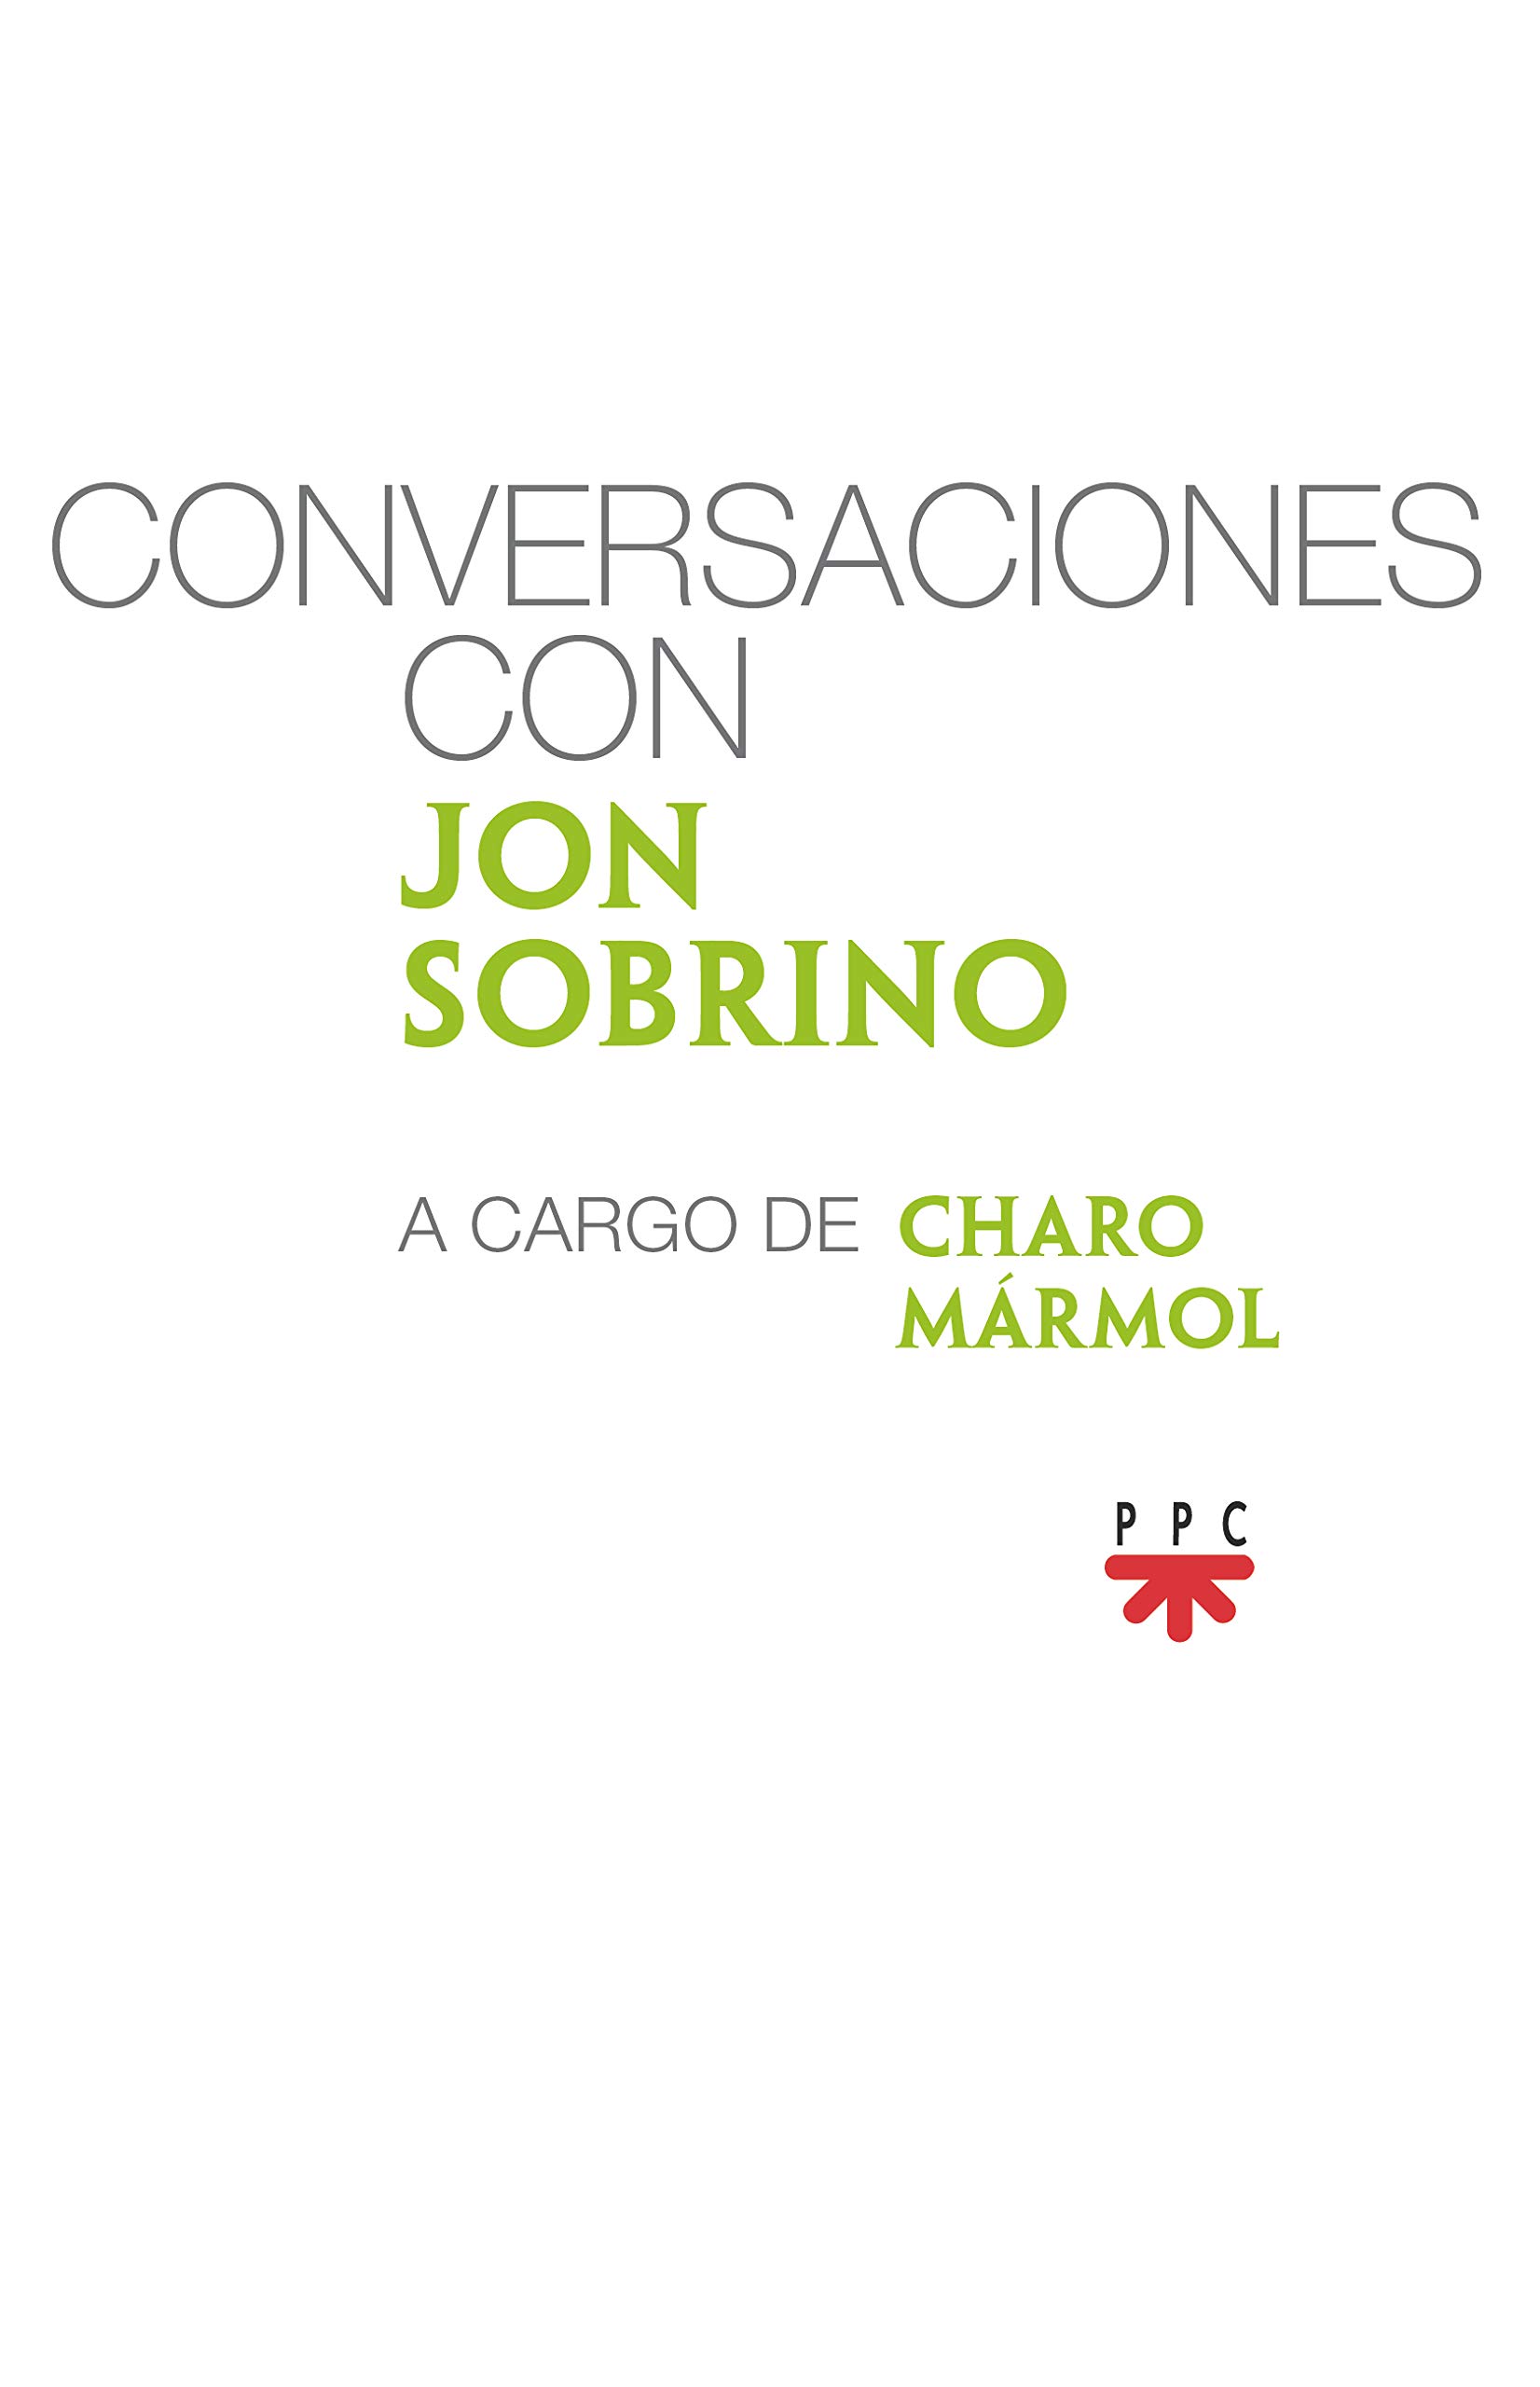 Imagen de portada del libro Conversaciones con Jon Sobrino